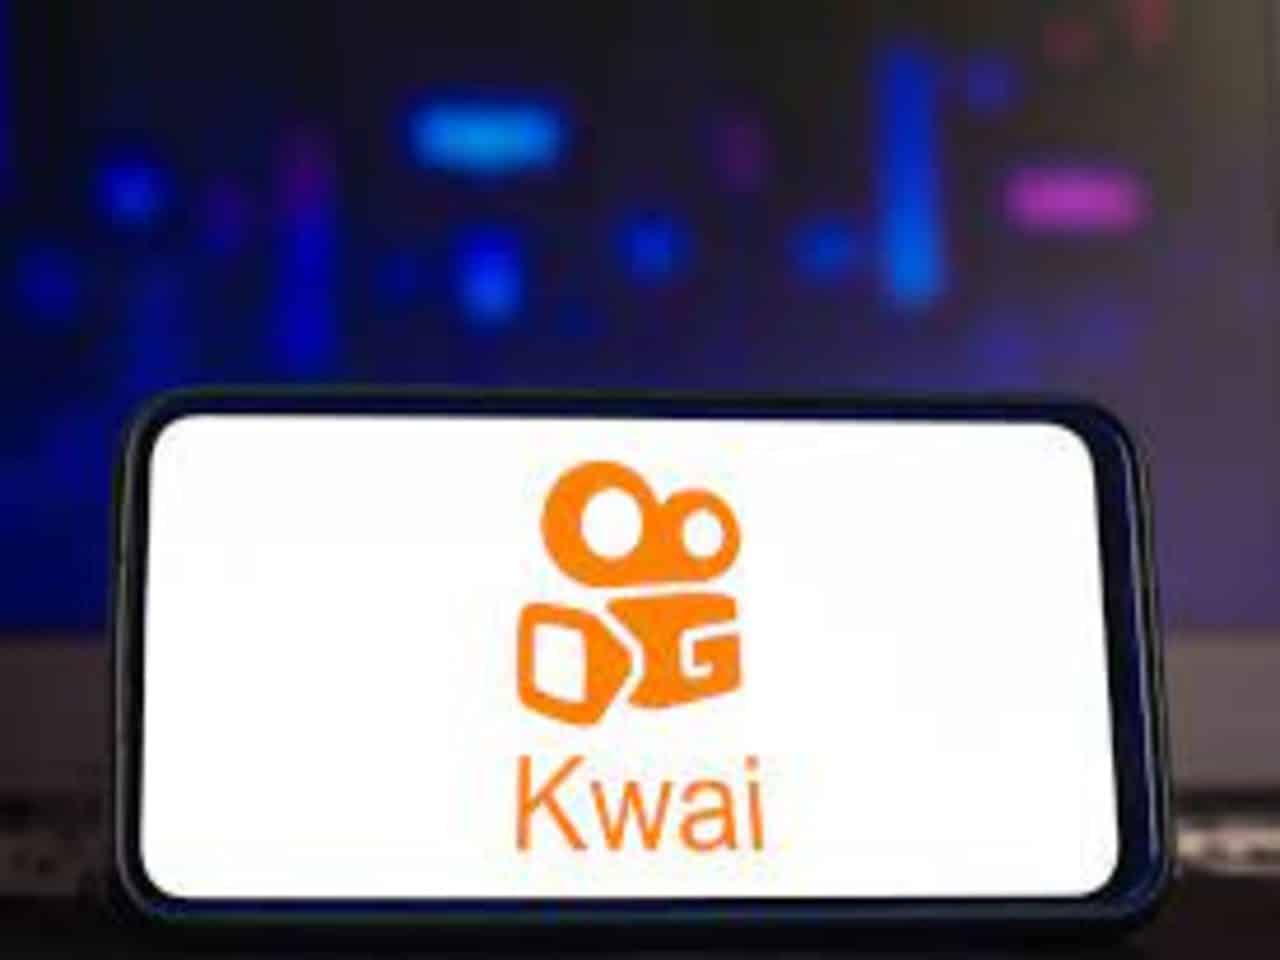 Como Descargar Kwai en PC - USAR KWAI para PC Windows 